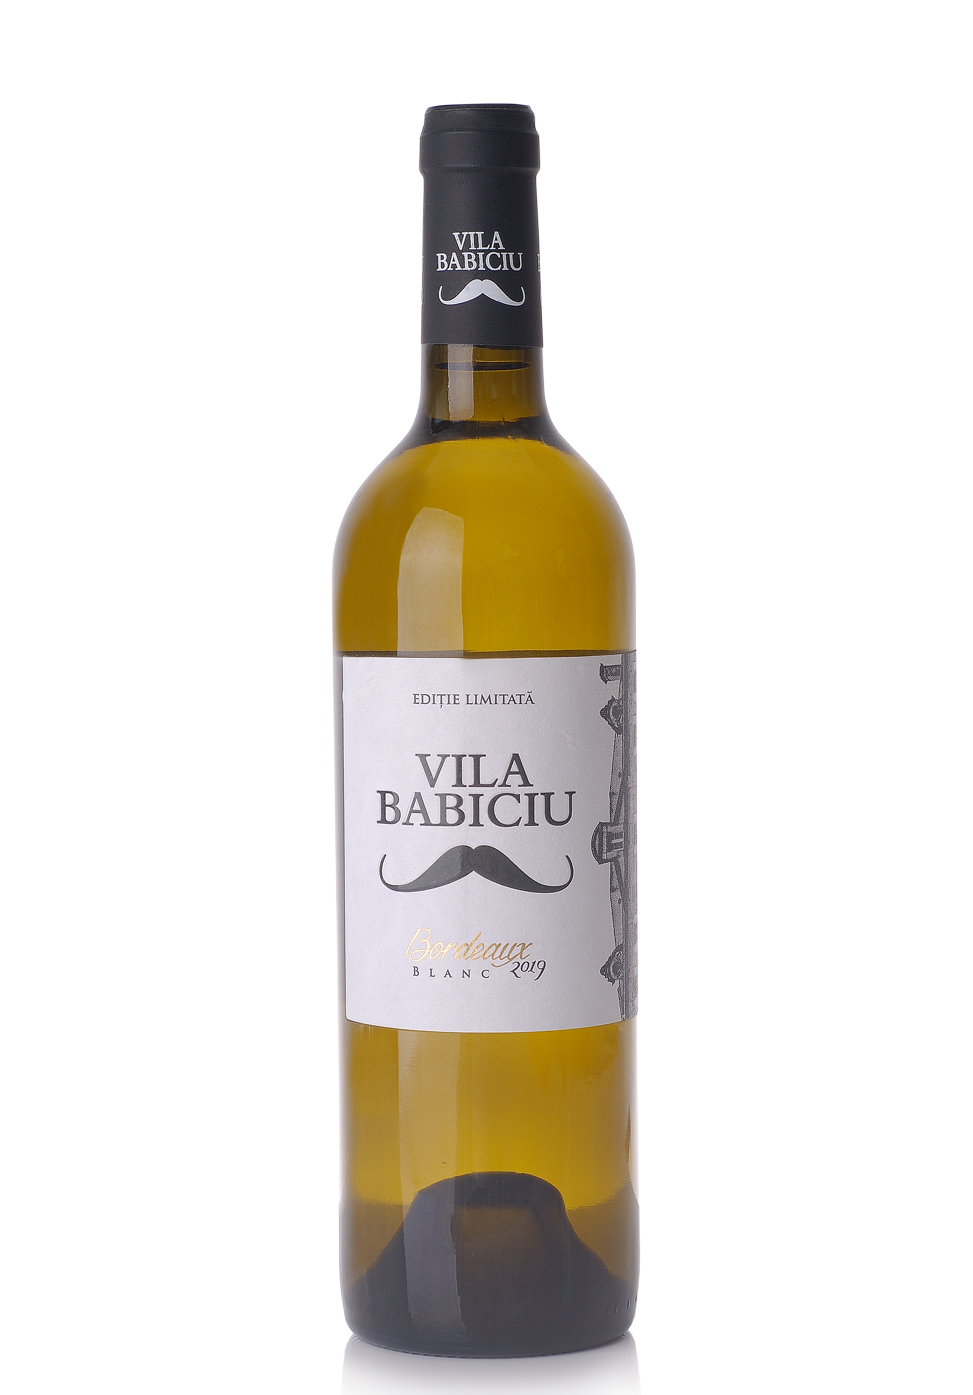 Vin Vila Babiciu Bordeaux Blanc 2018, Editie limitata (0.75L) Image